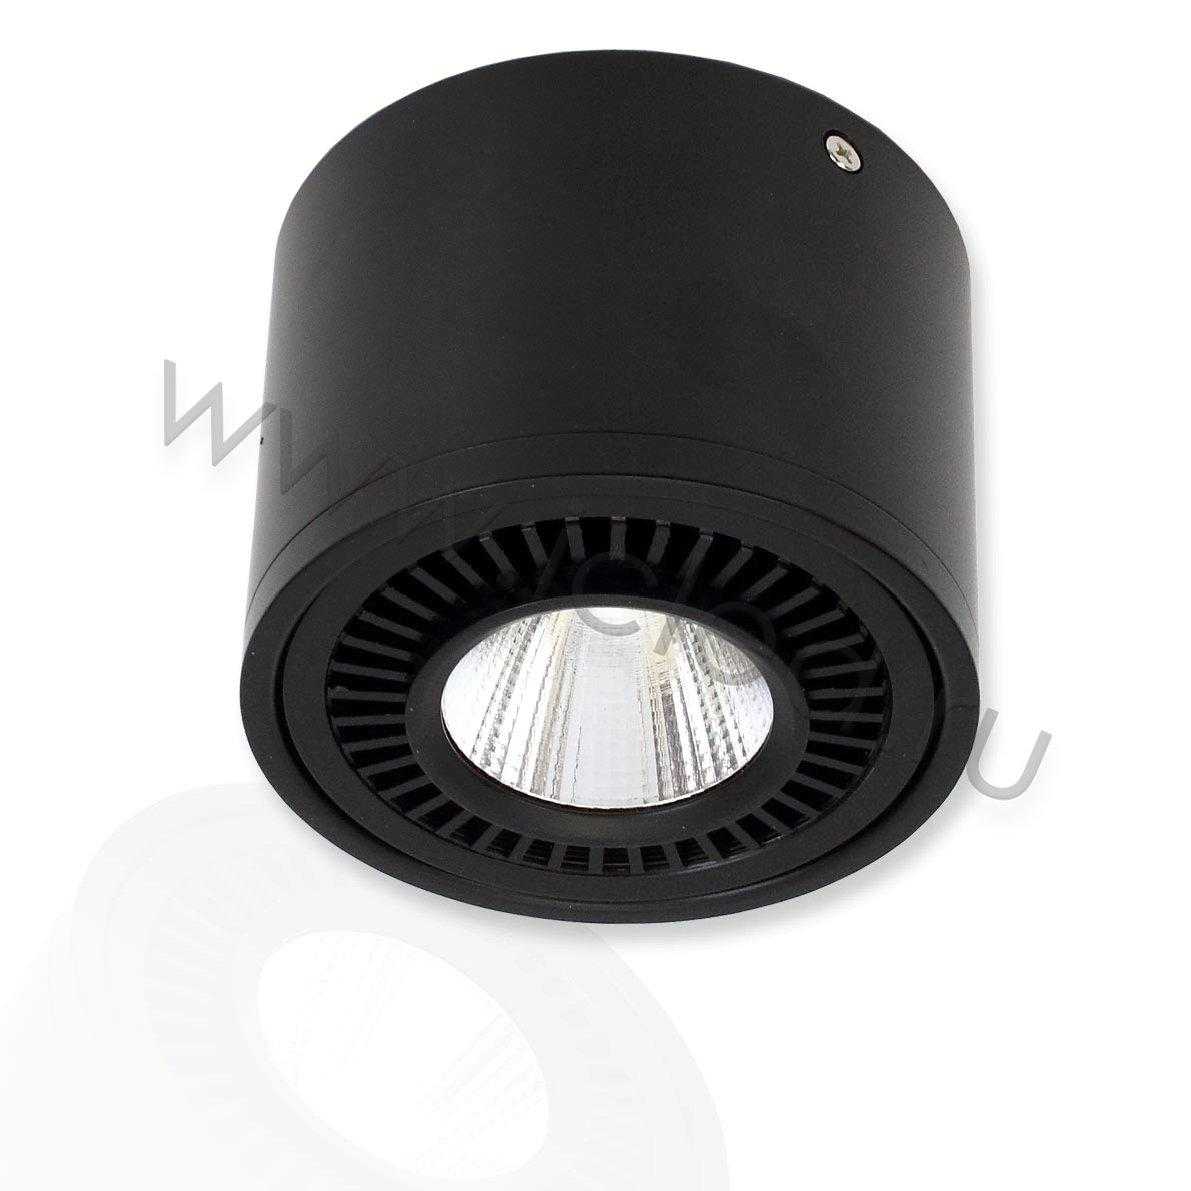 Светодиодные светильники Светодиодный светильник JH151B-15W B791 (15W, warm white)